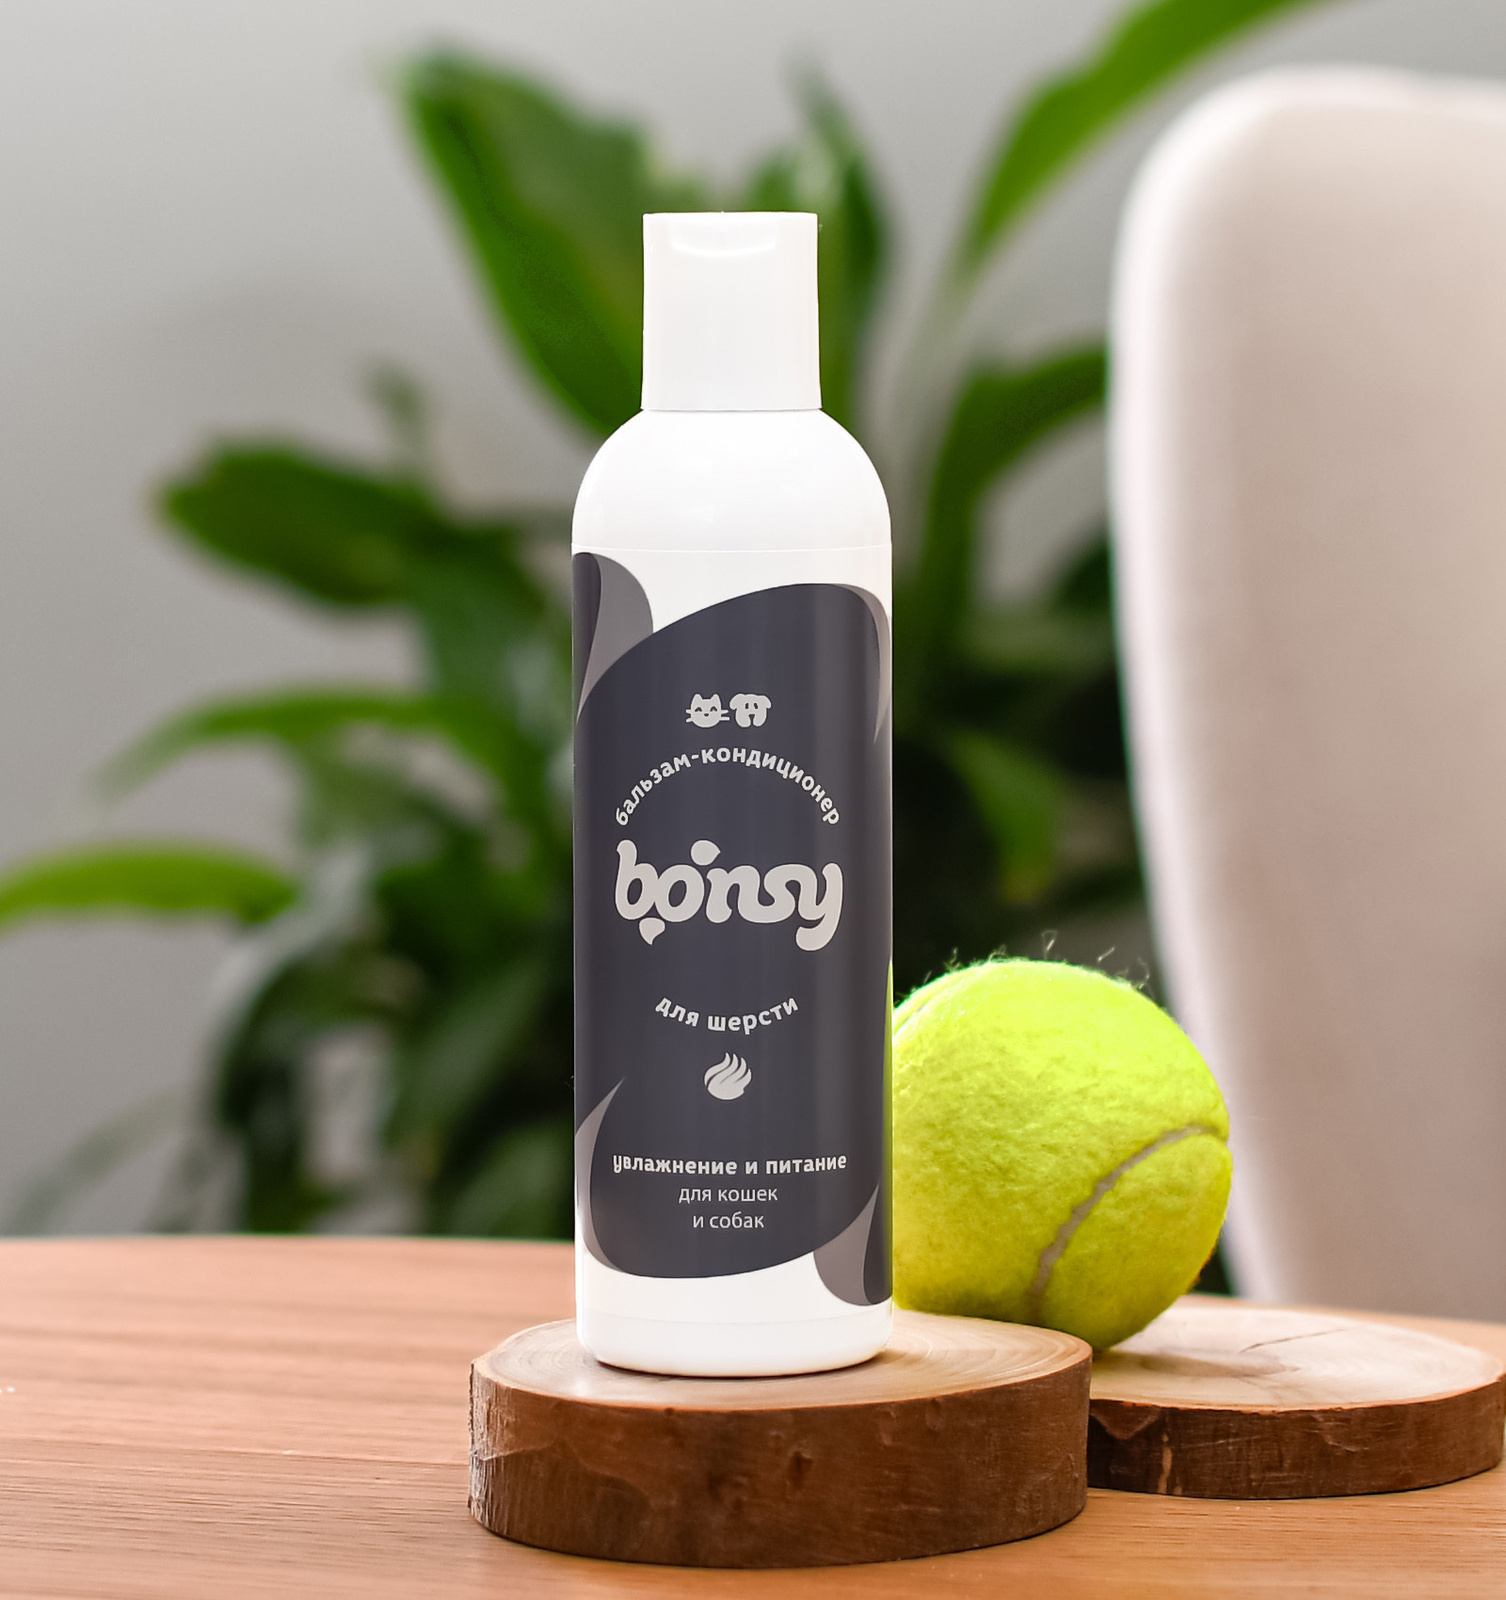 Bonsy Bonsy бальзам-кондиционер увлажнение и питание для кошек и собак (250 мл)